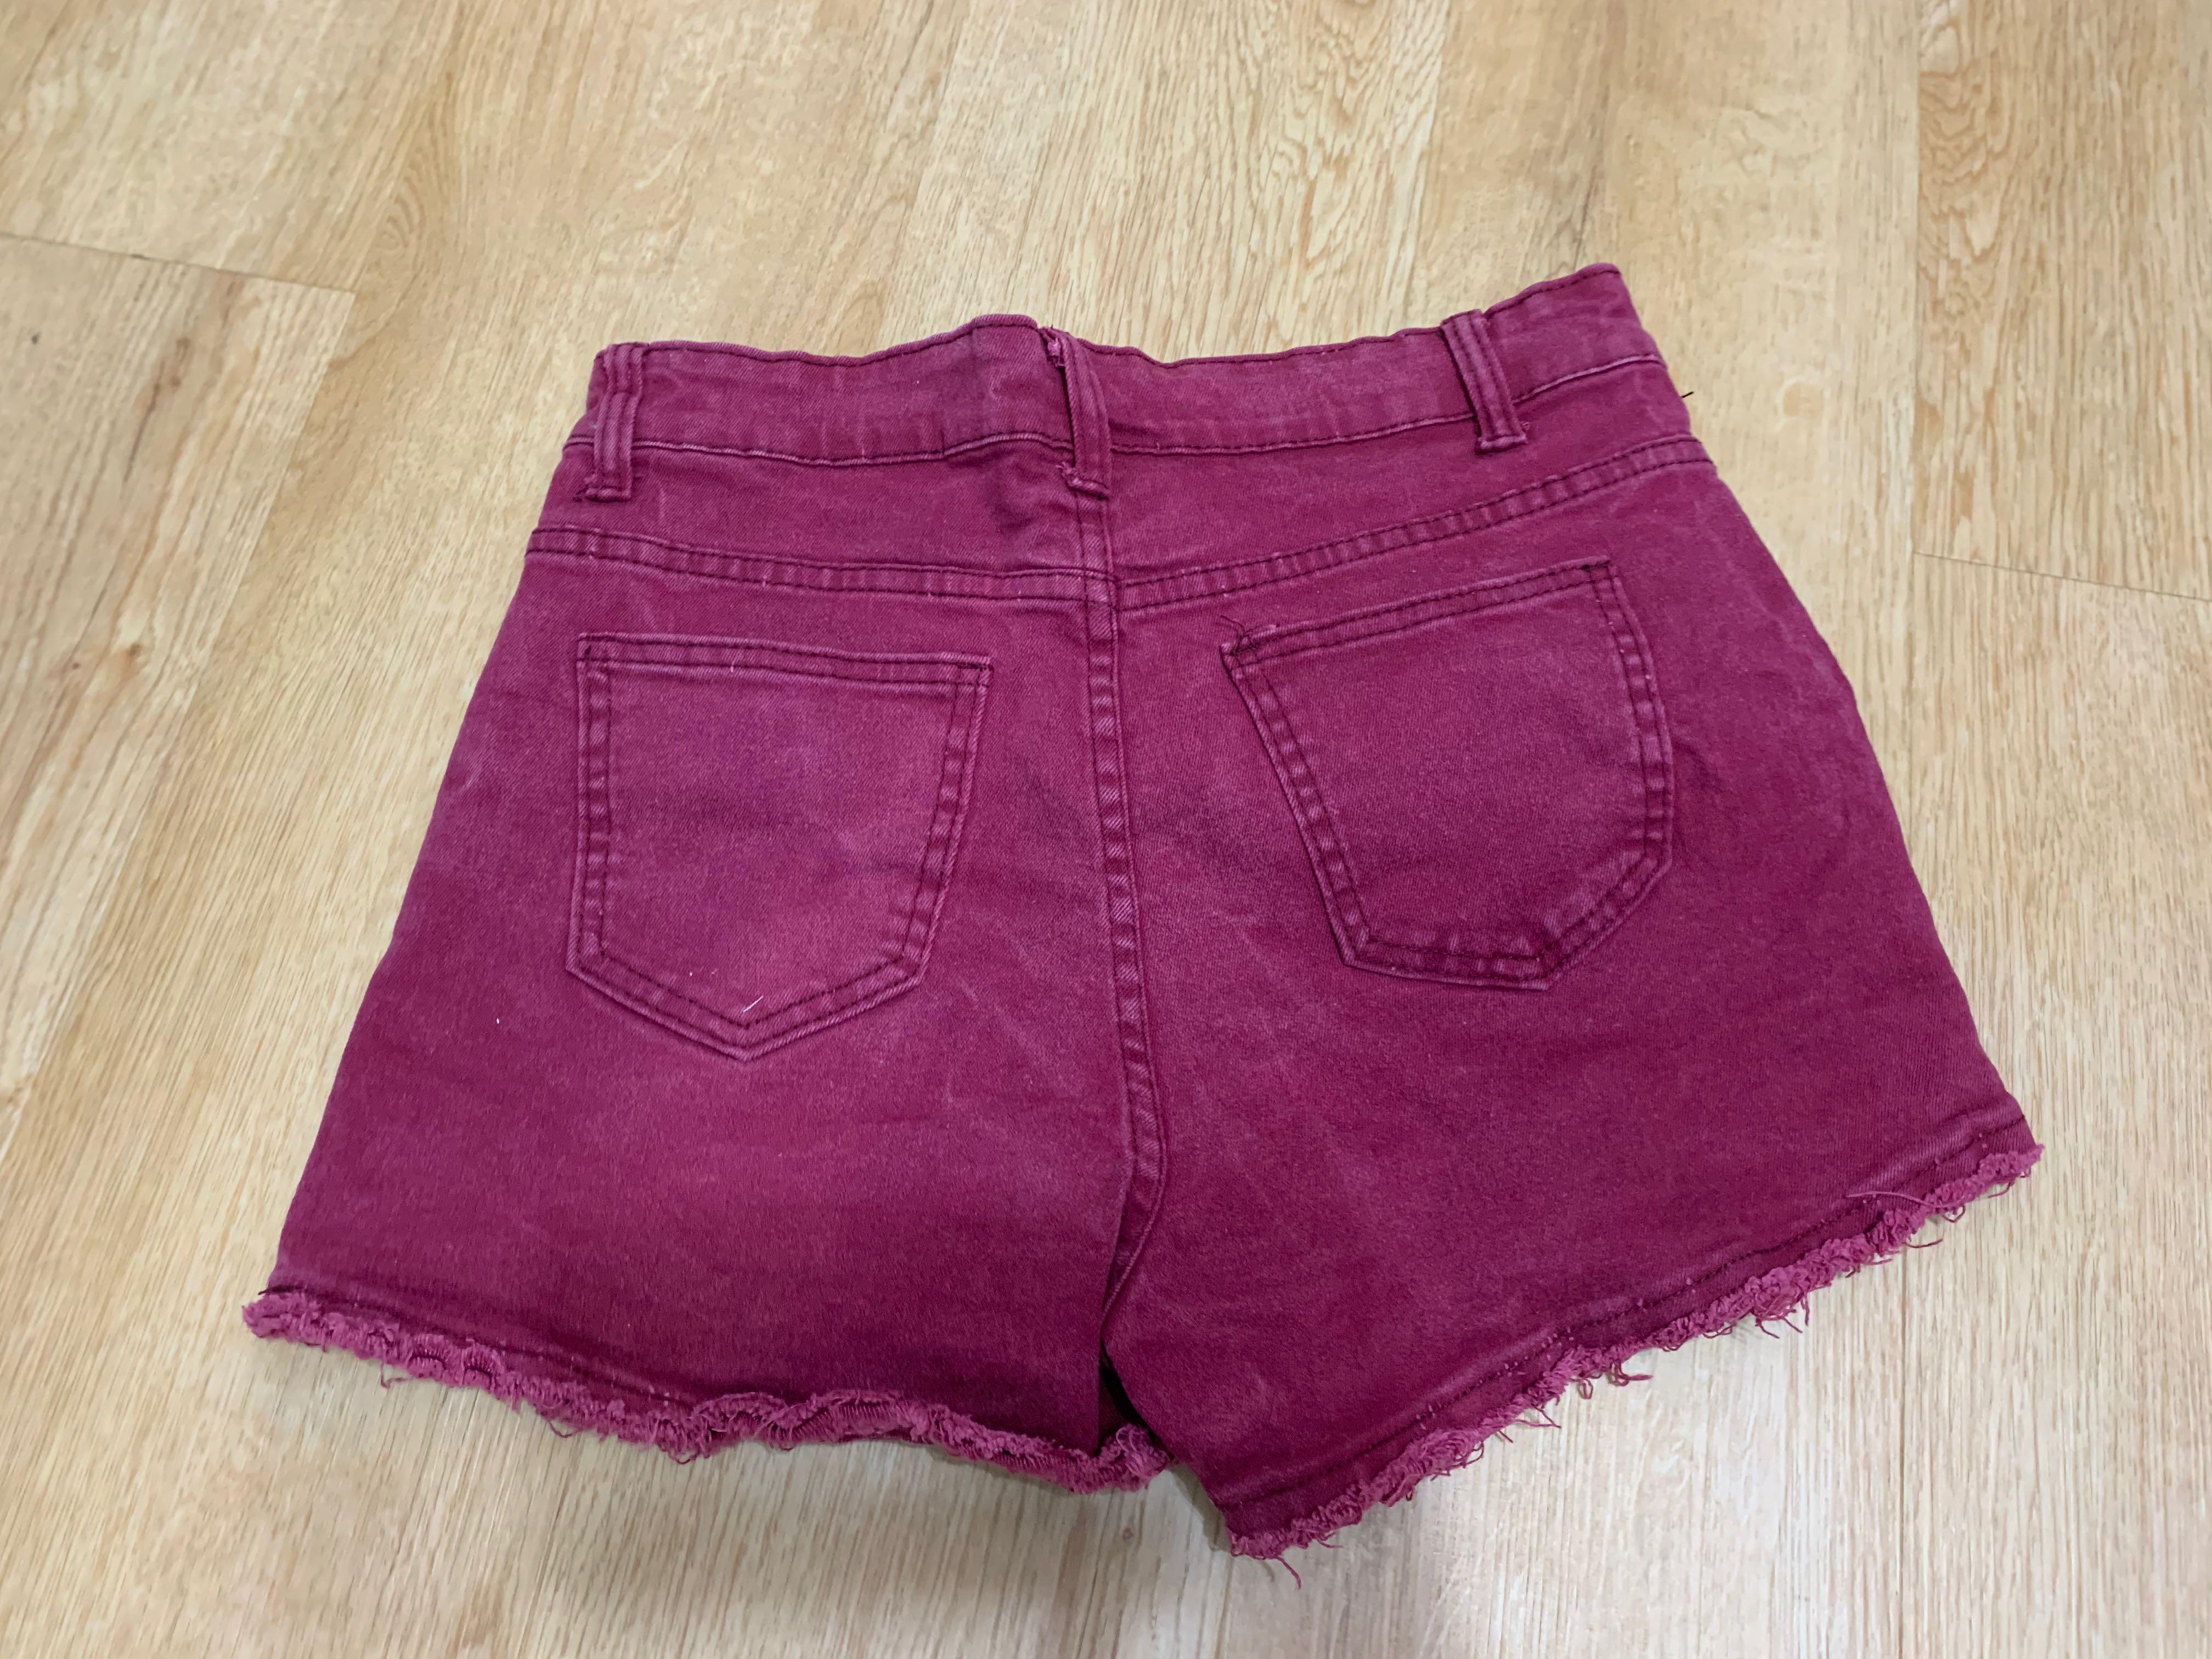 burgundy jean shorts